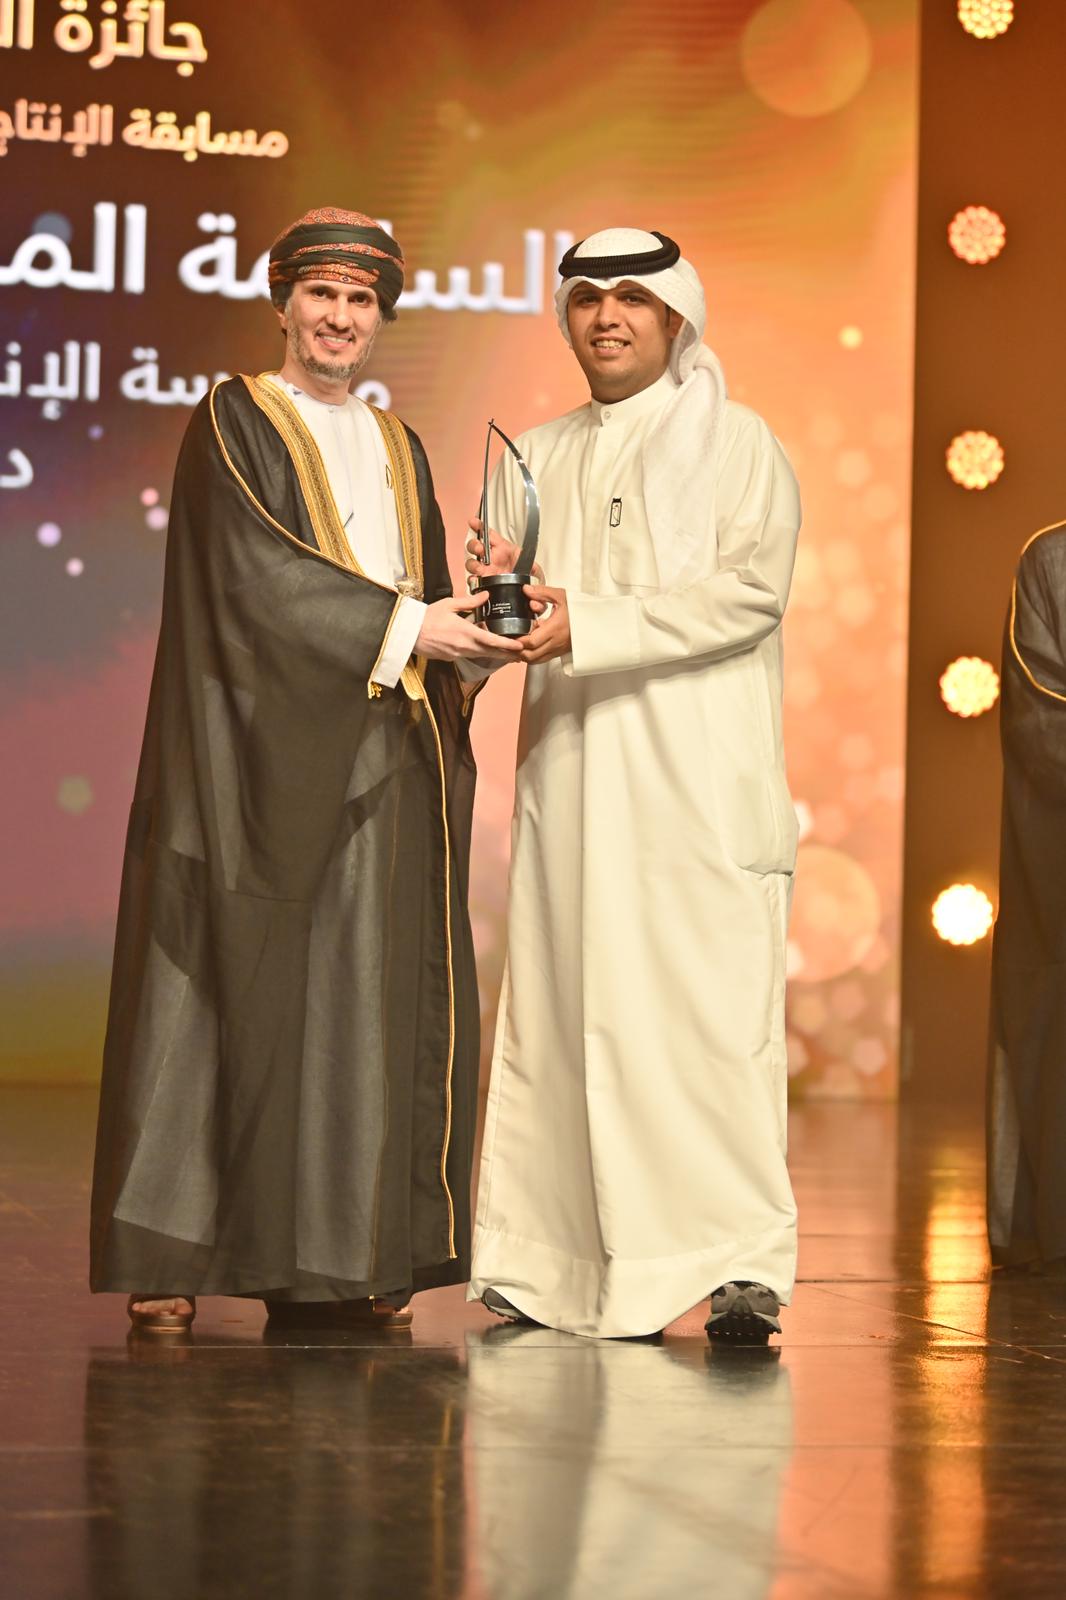 مؤسسة الانتاج البرامجي تحصد اربع جوائز في مهرجان الخليج للتلفزيون